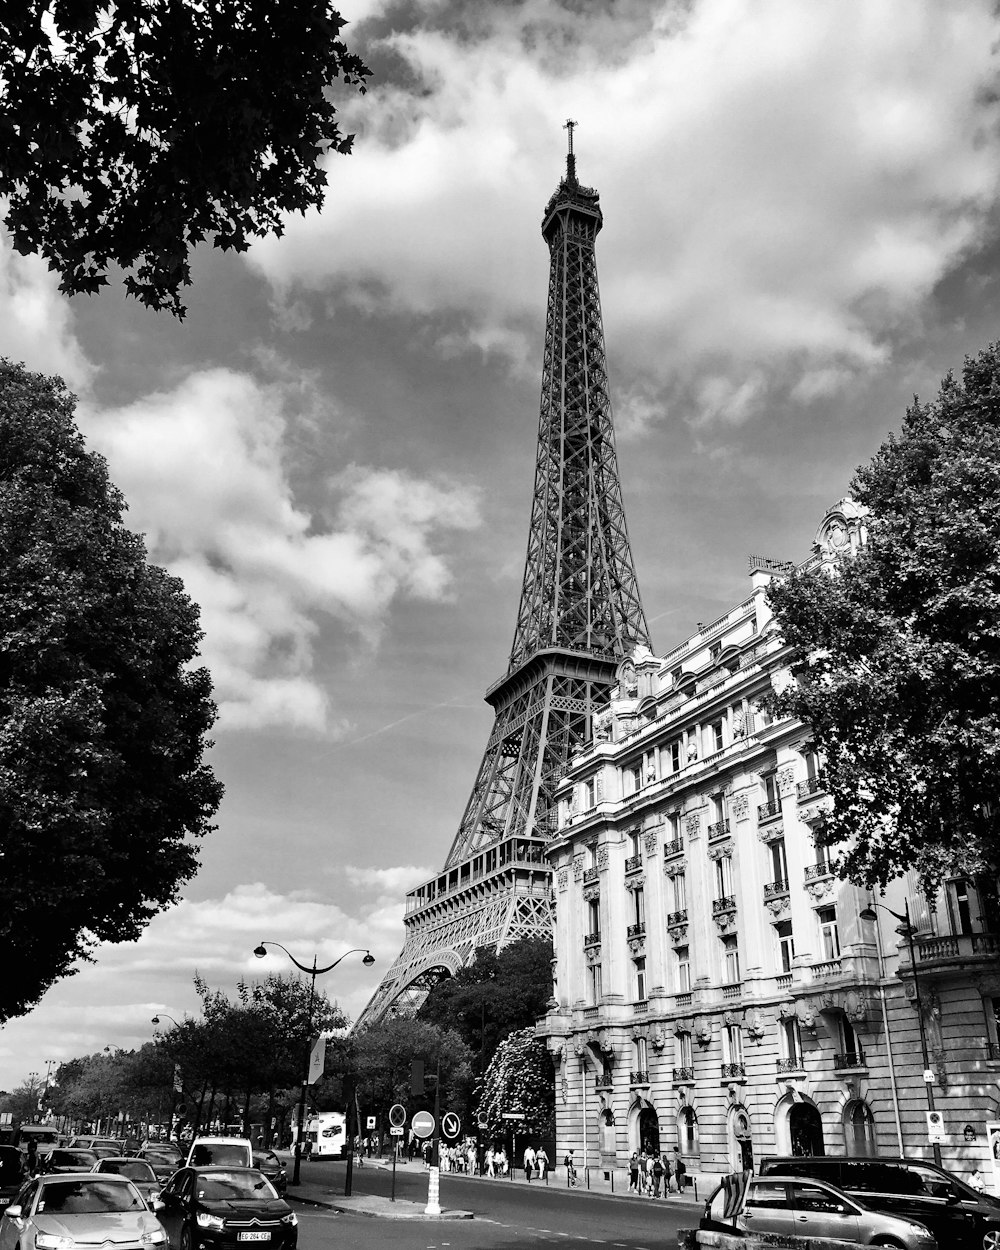 Torre Eiffel en París, Francia